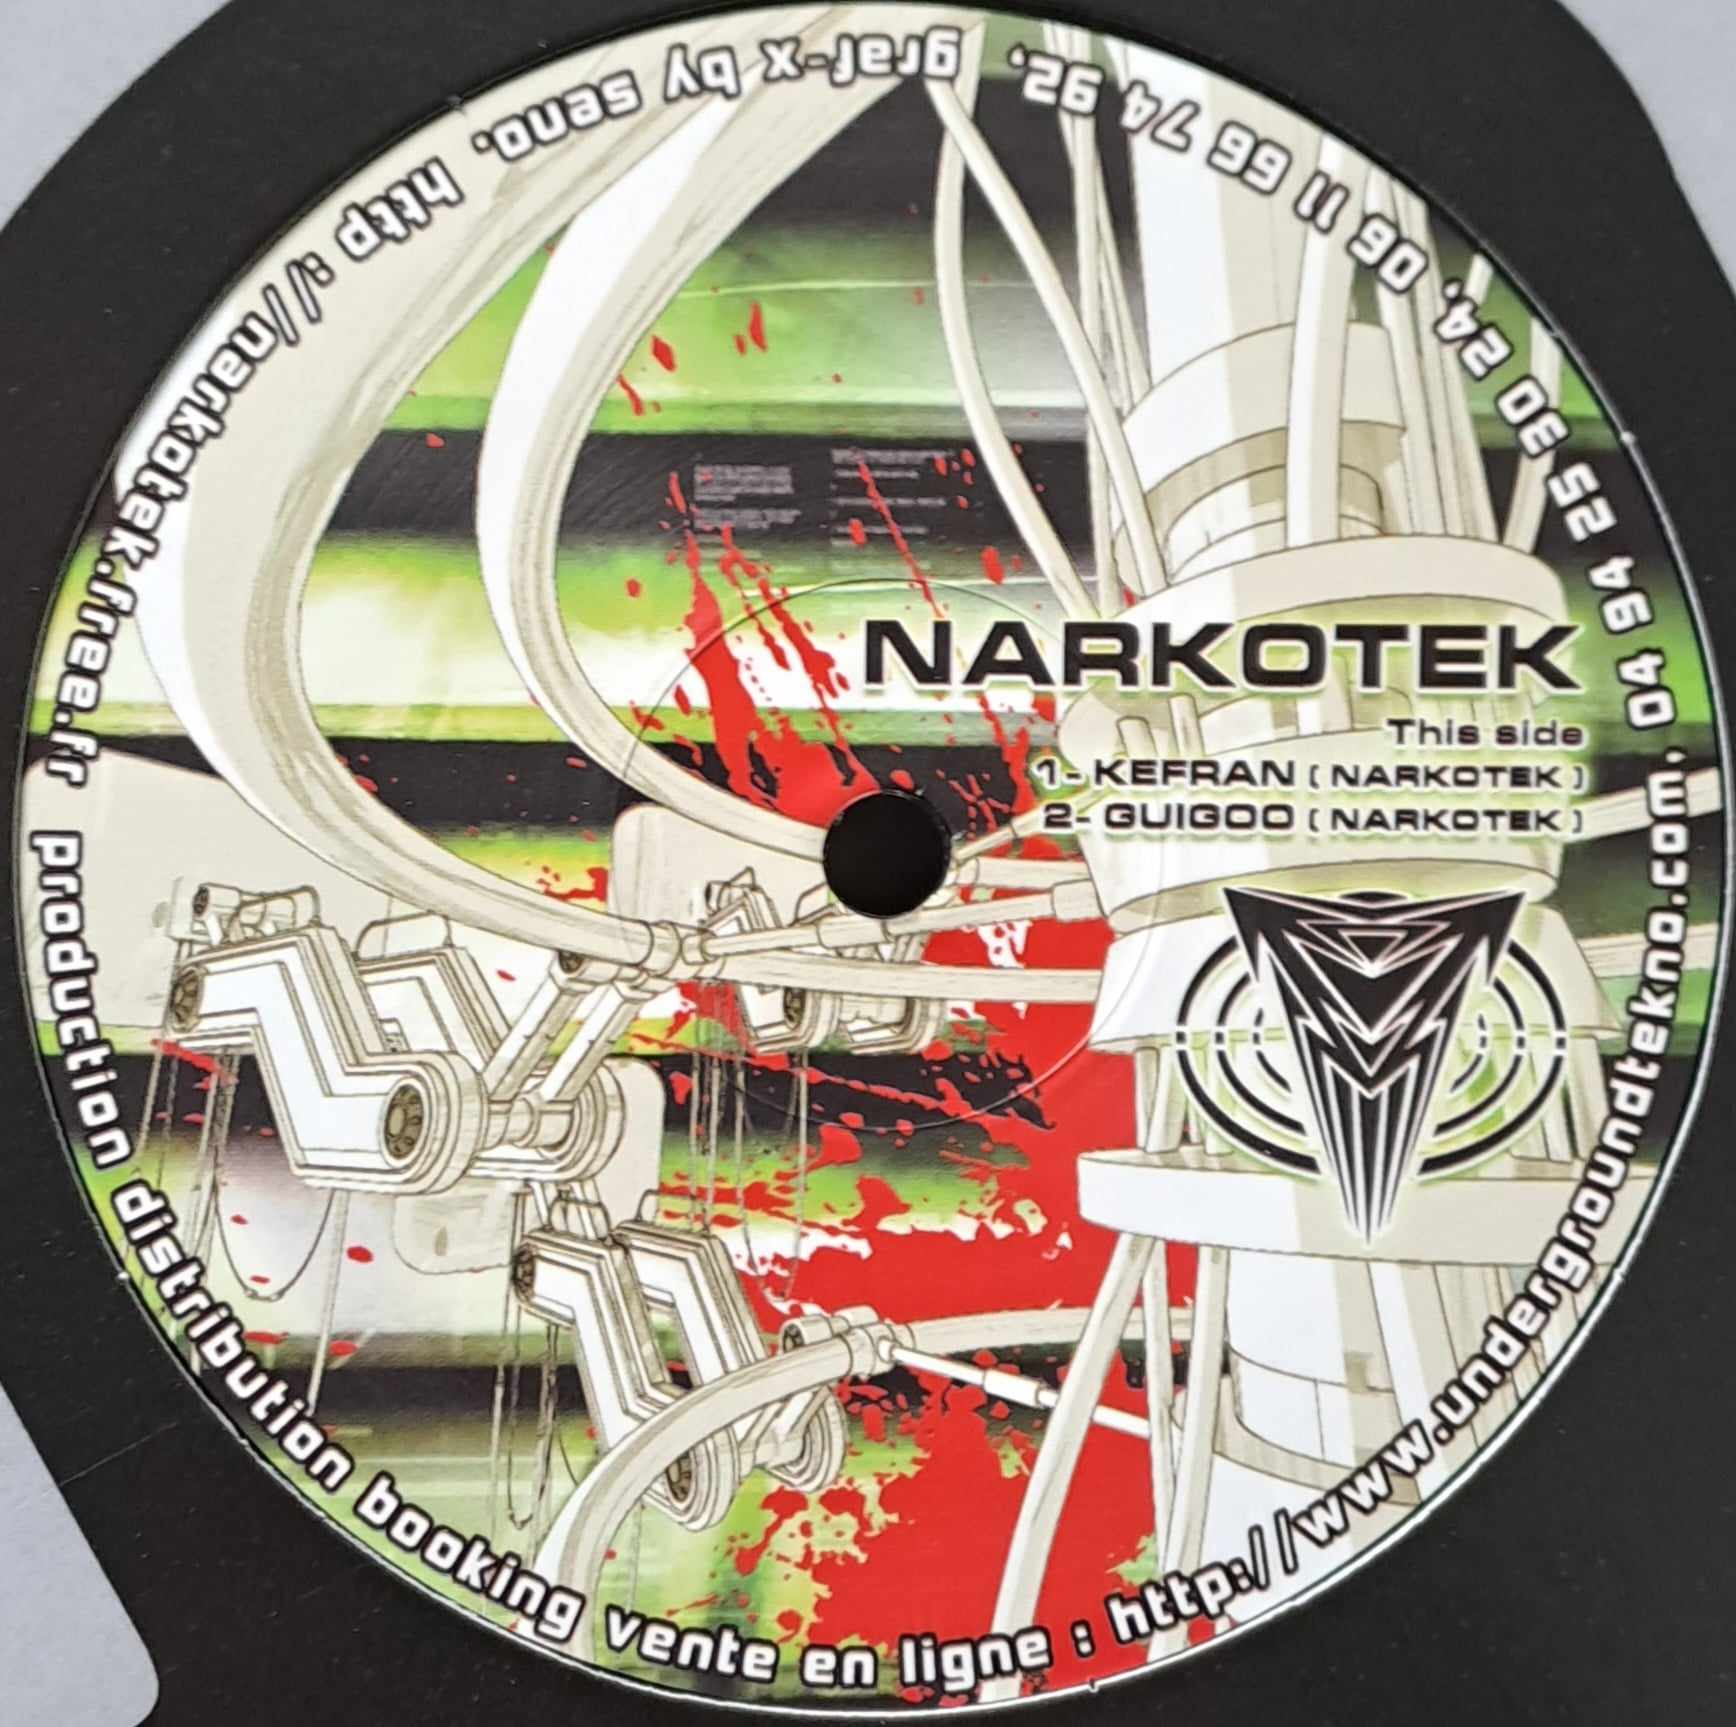 LSDF Vs Narkotek (RP2023) (toute dernière copie en stock) - vinyle tribecore